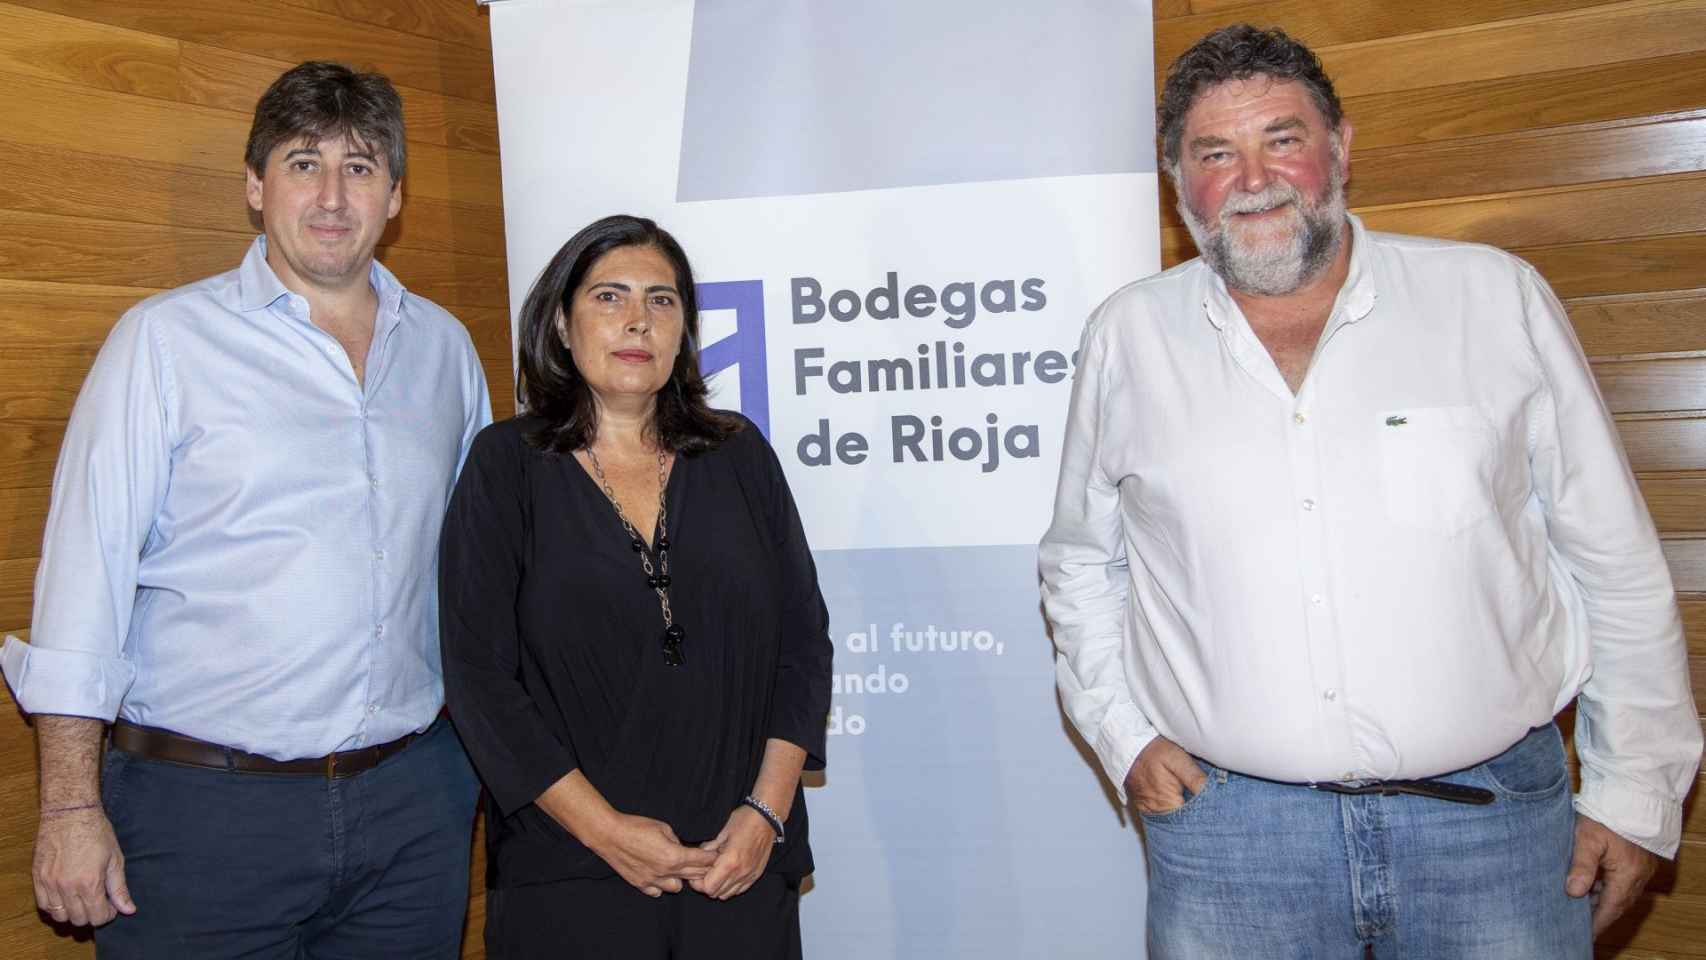 El presidente de Bodegas Familiares de Rioja, Eduardo Hernáiz, la gerente, Ana Jiménez, y el vicepresidente y portavoz en el Consejo Regulador, Juan Carlos Sancha.